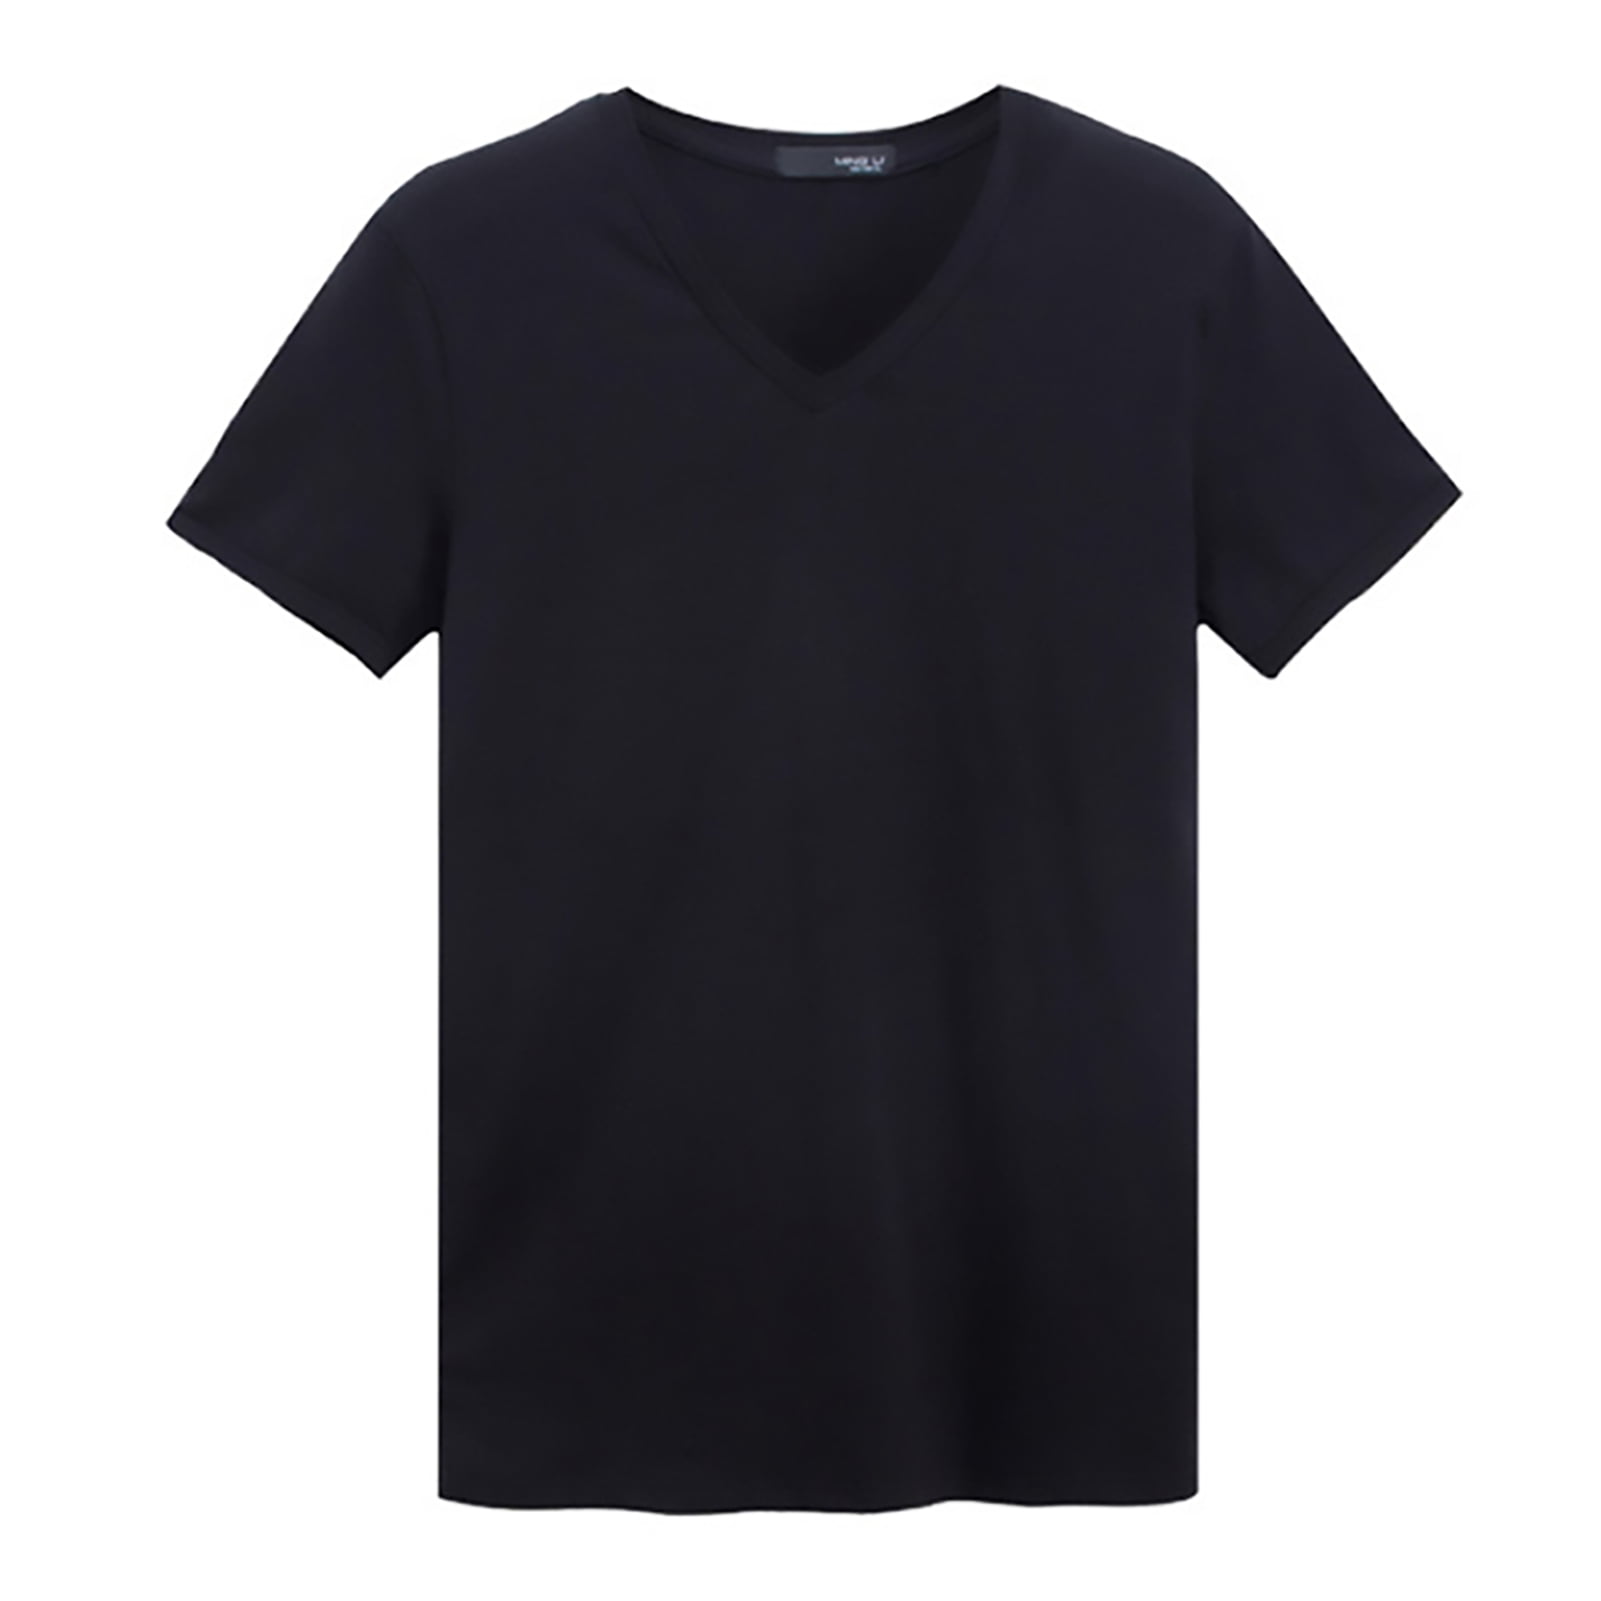 Summer Walker T shirt Black Tee Men Black T Shirt S-3XL Details about   New Rare 